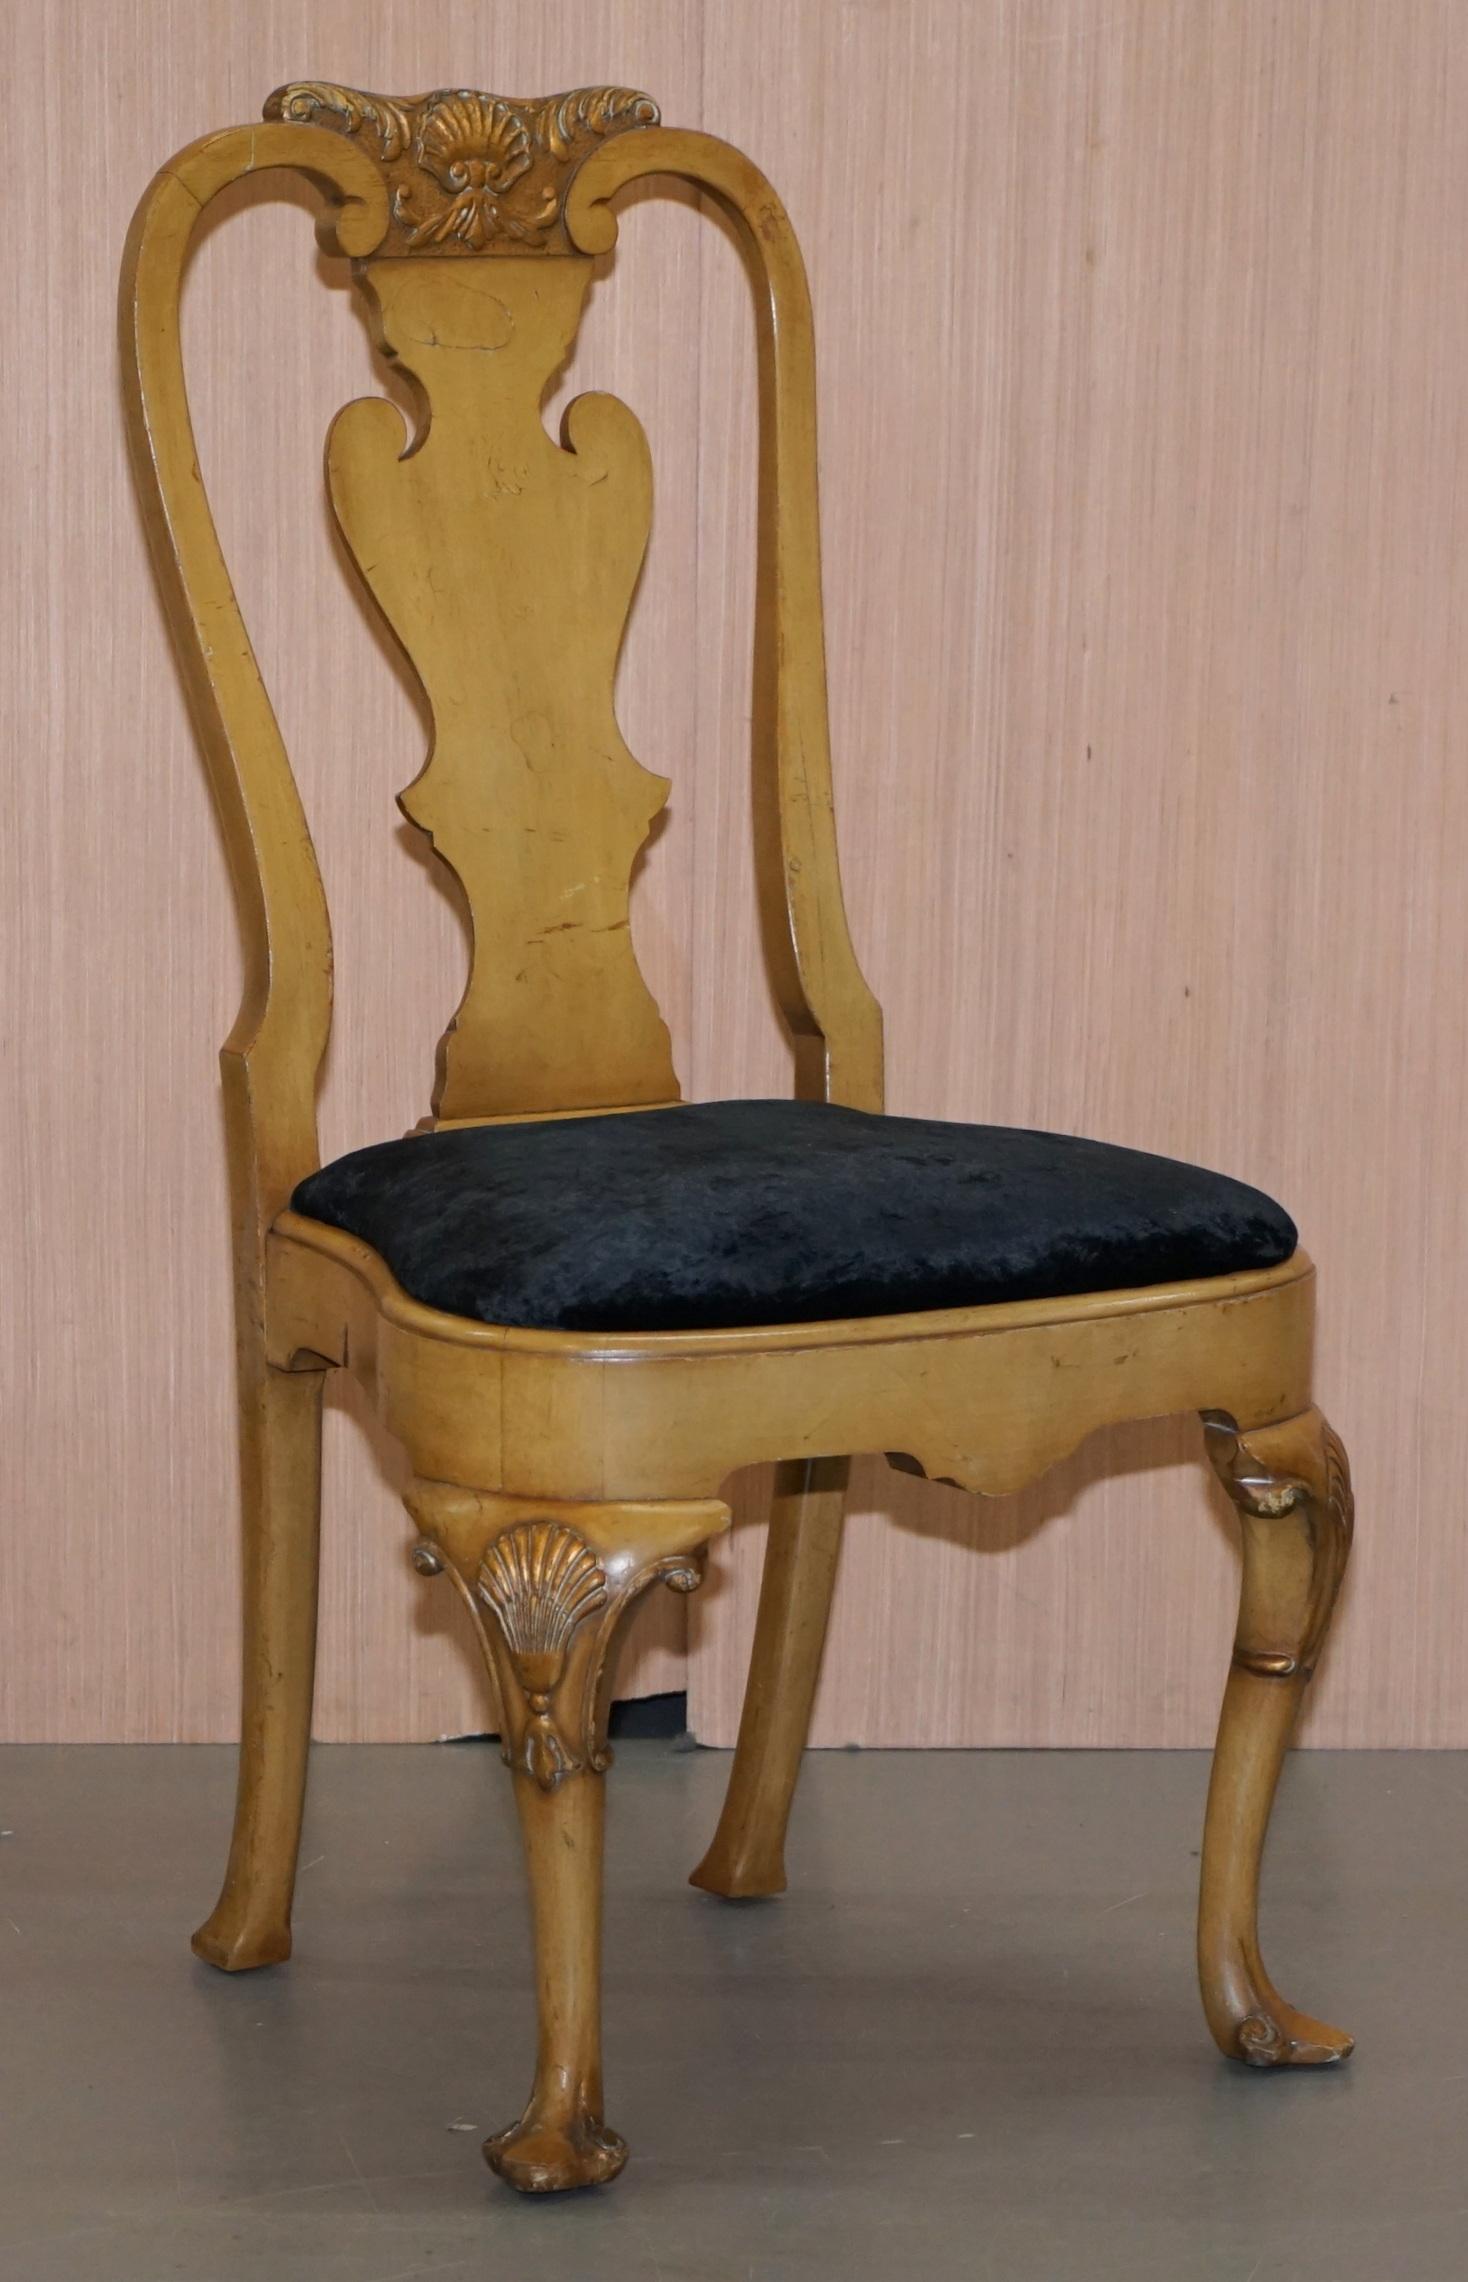 Nous sommes ravis de proposer à la vente ce superbe ensemble de quatre chaises de salle à manger Queen Anne en noyer vers 1900, avec un revêtement en velours noir écrasé

Un très bel ensemble de chaises décoratives, très sculptées avec des détails